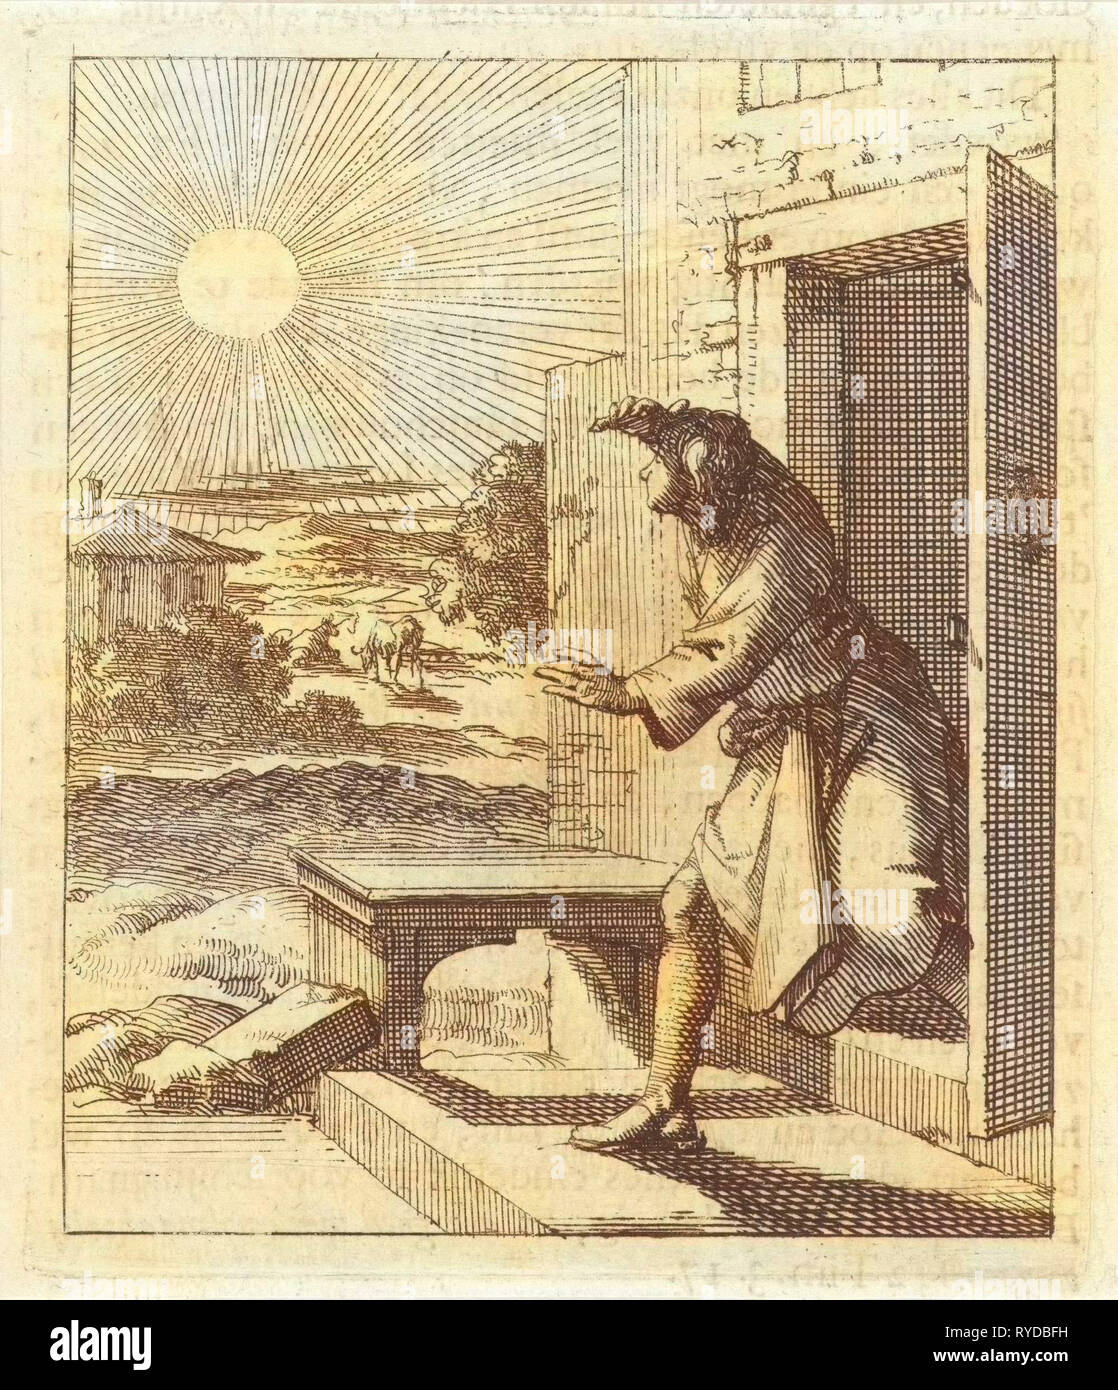 L'homme protège ses yeux du soleil lorsqu'il marche, Jan Luyken, mer. Pieter Arentsz (II), 1689 Banque D'Images